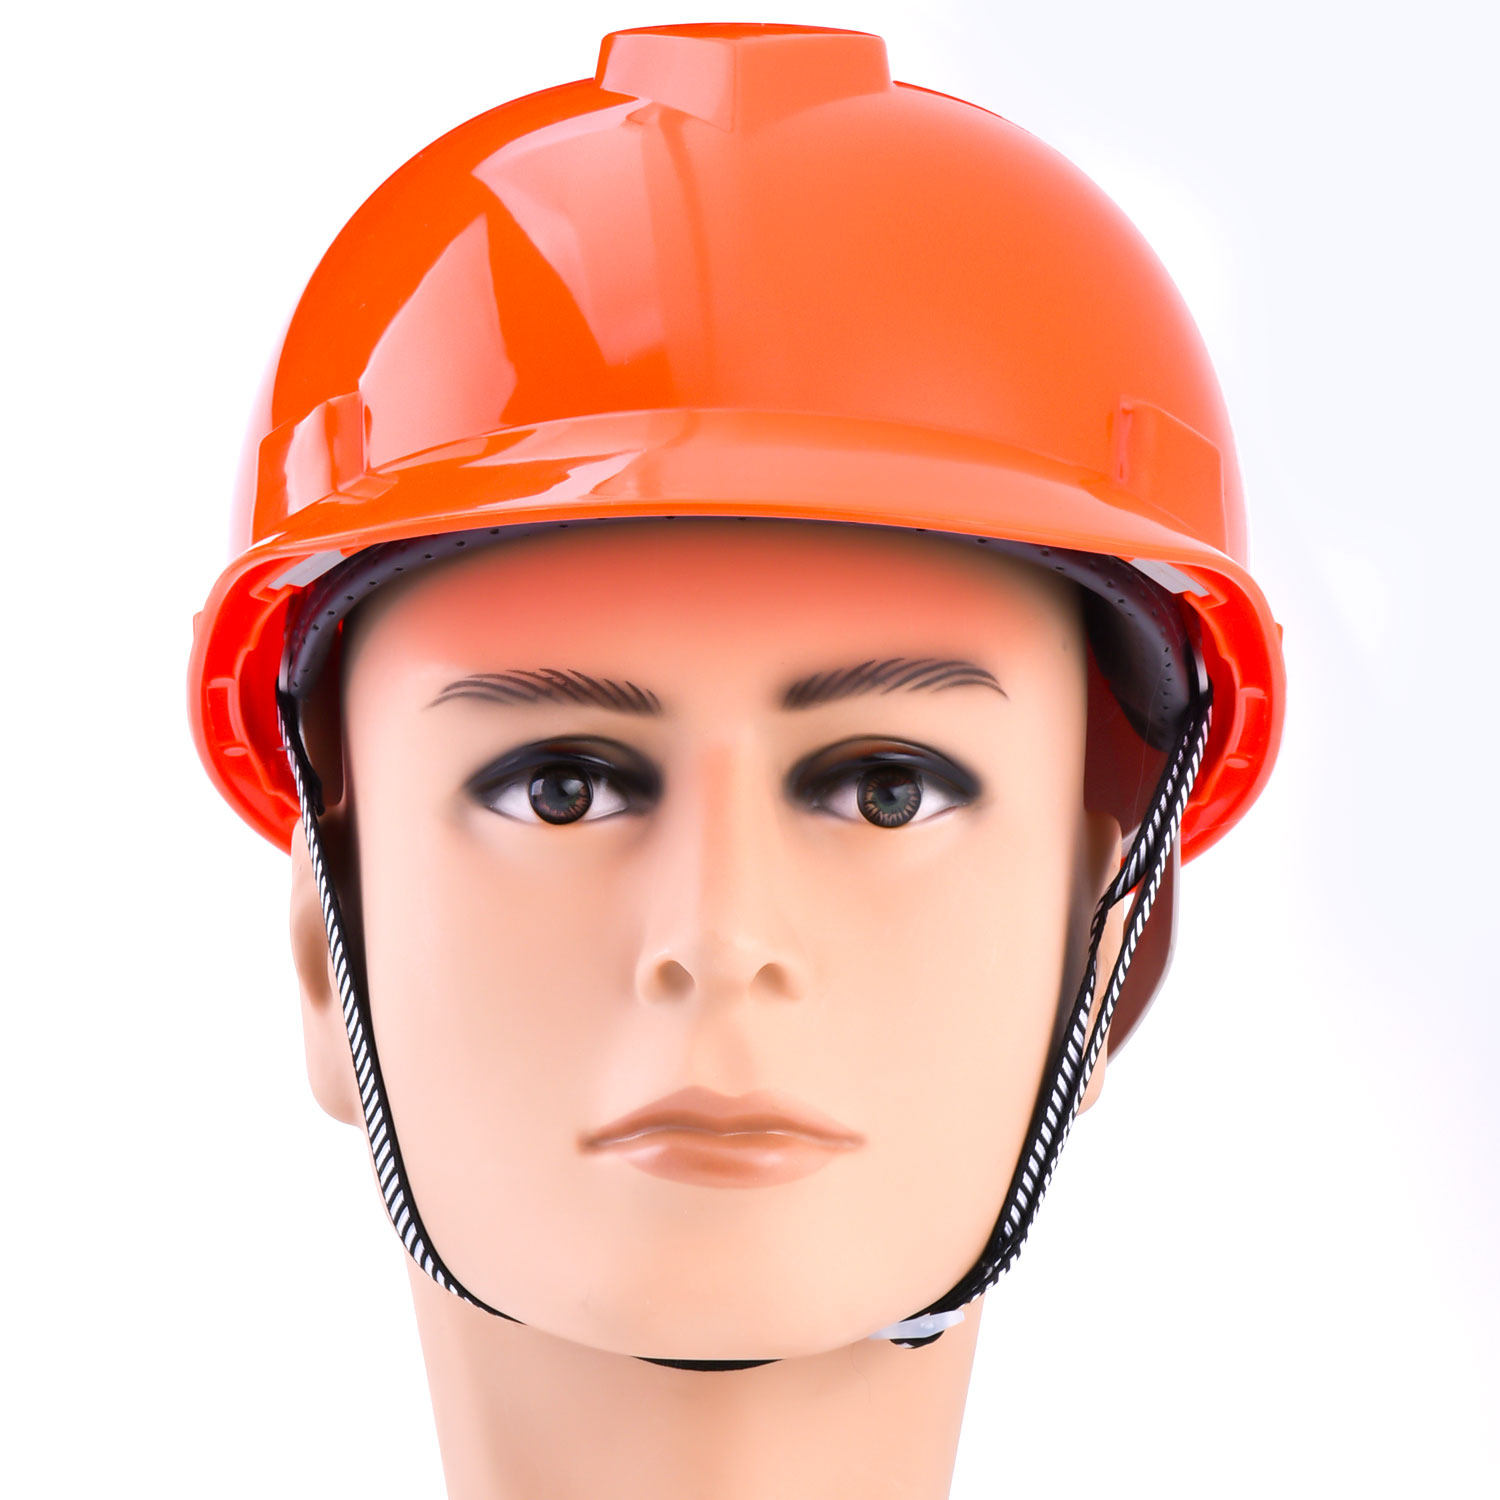 Helmets de seguridad industrial azul W-003